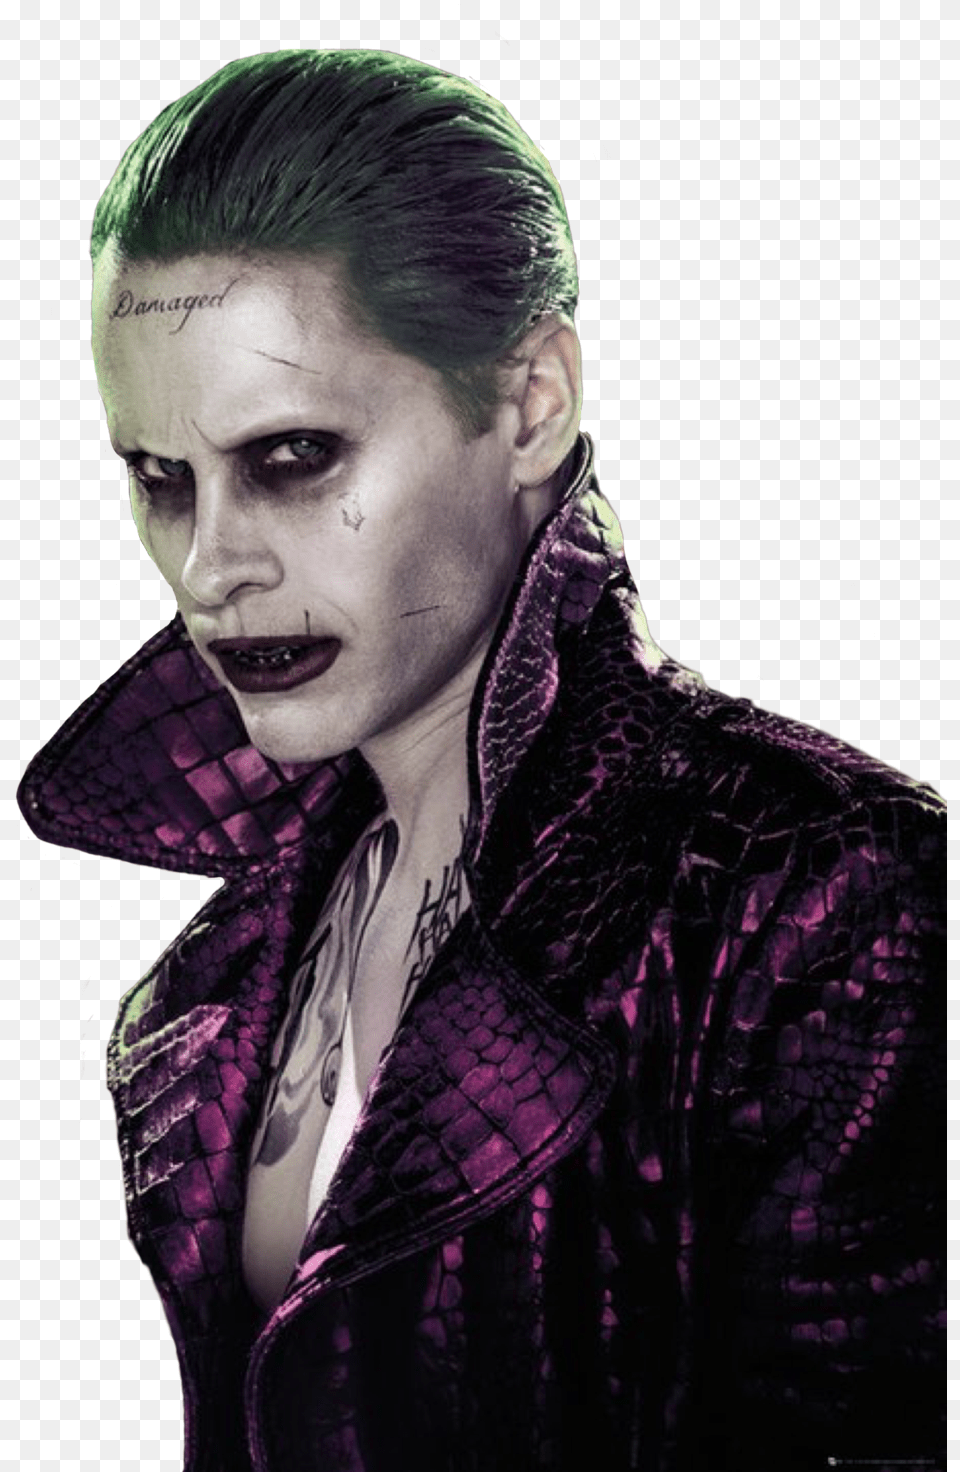 Joker Suicide Squad Joker, Portrait, Photography, Person, Face Free Transparent Png